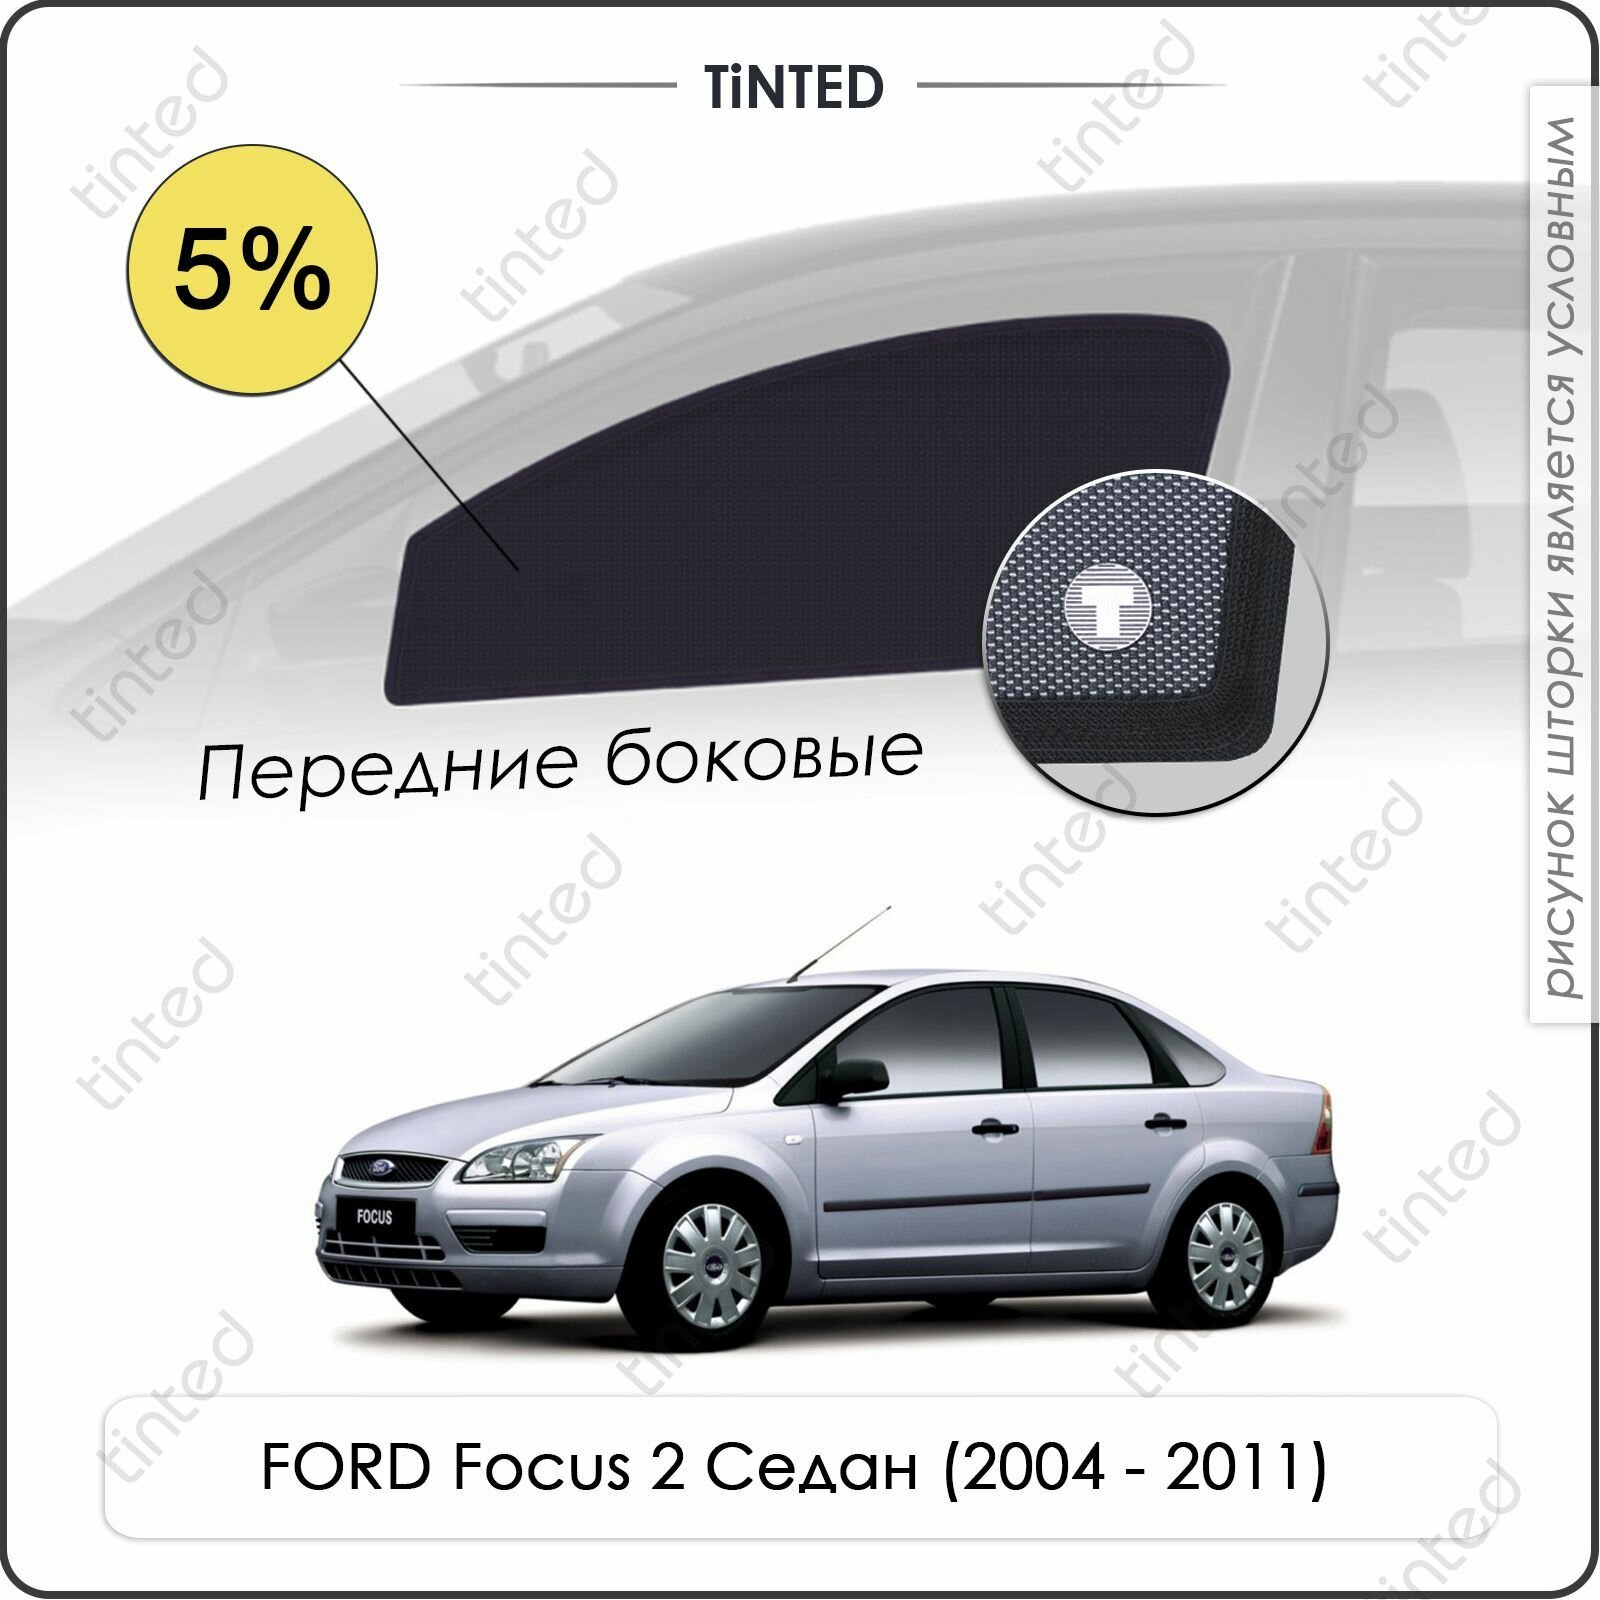 Шторки на автомобиль солнцезащитные FORD Focus 2 Седан 4дв. (2004 - 2011) на передние двери 5%, сетки от солнца в машину форд фокус, Каркасные автошторки Premium